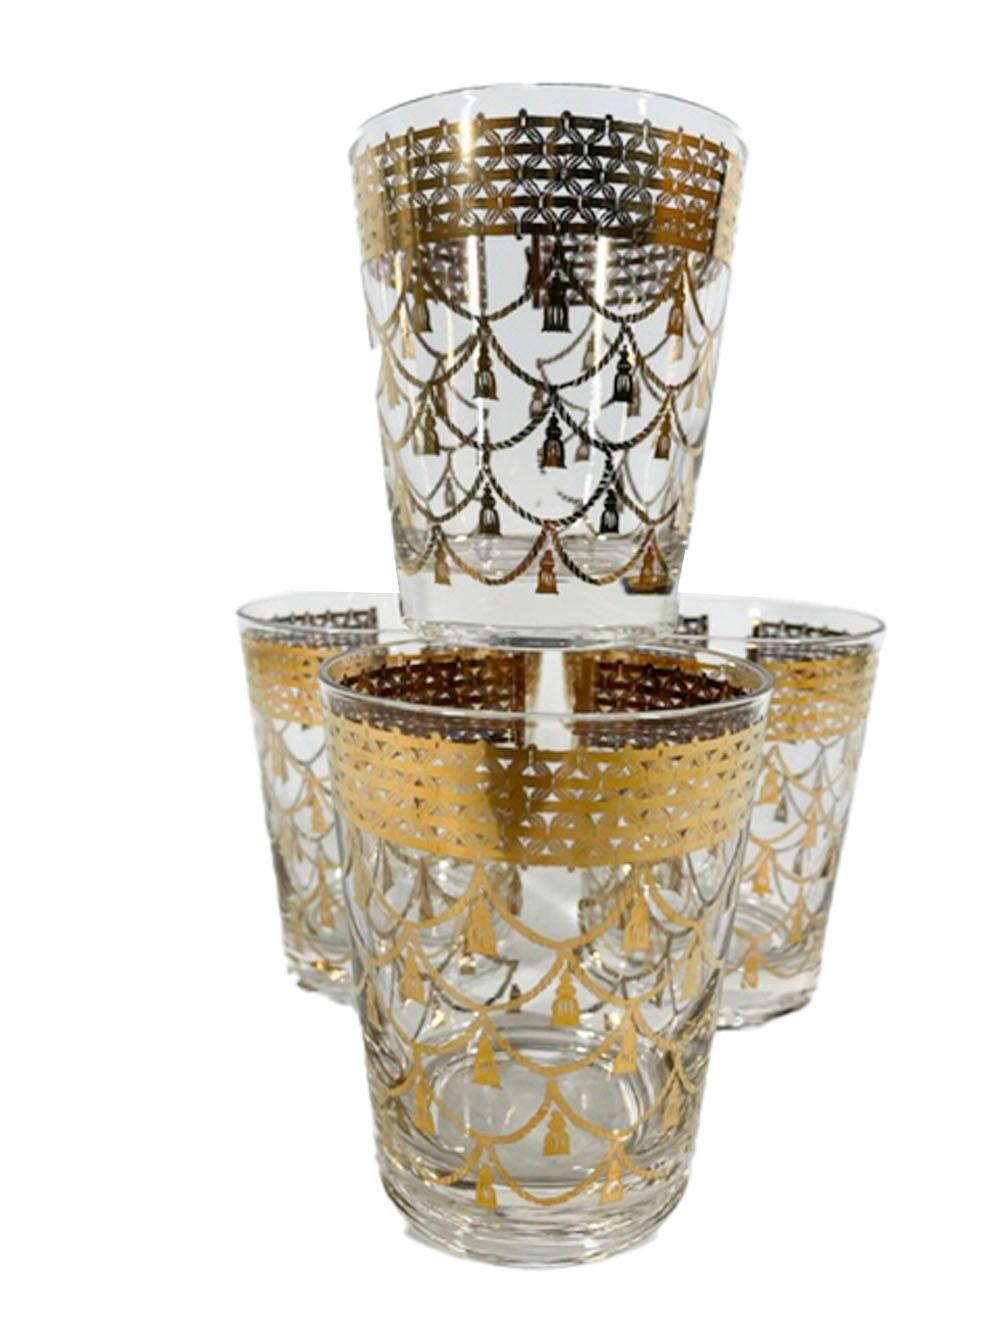 Quatre rares verres double old fashioned de Cera Glassware décorés en or 22 carats avec des cordons à glands suspendus à une bande ajourée avec un espace et ce qui semble être un fermoir, peut-être destiné à représenter un collier.